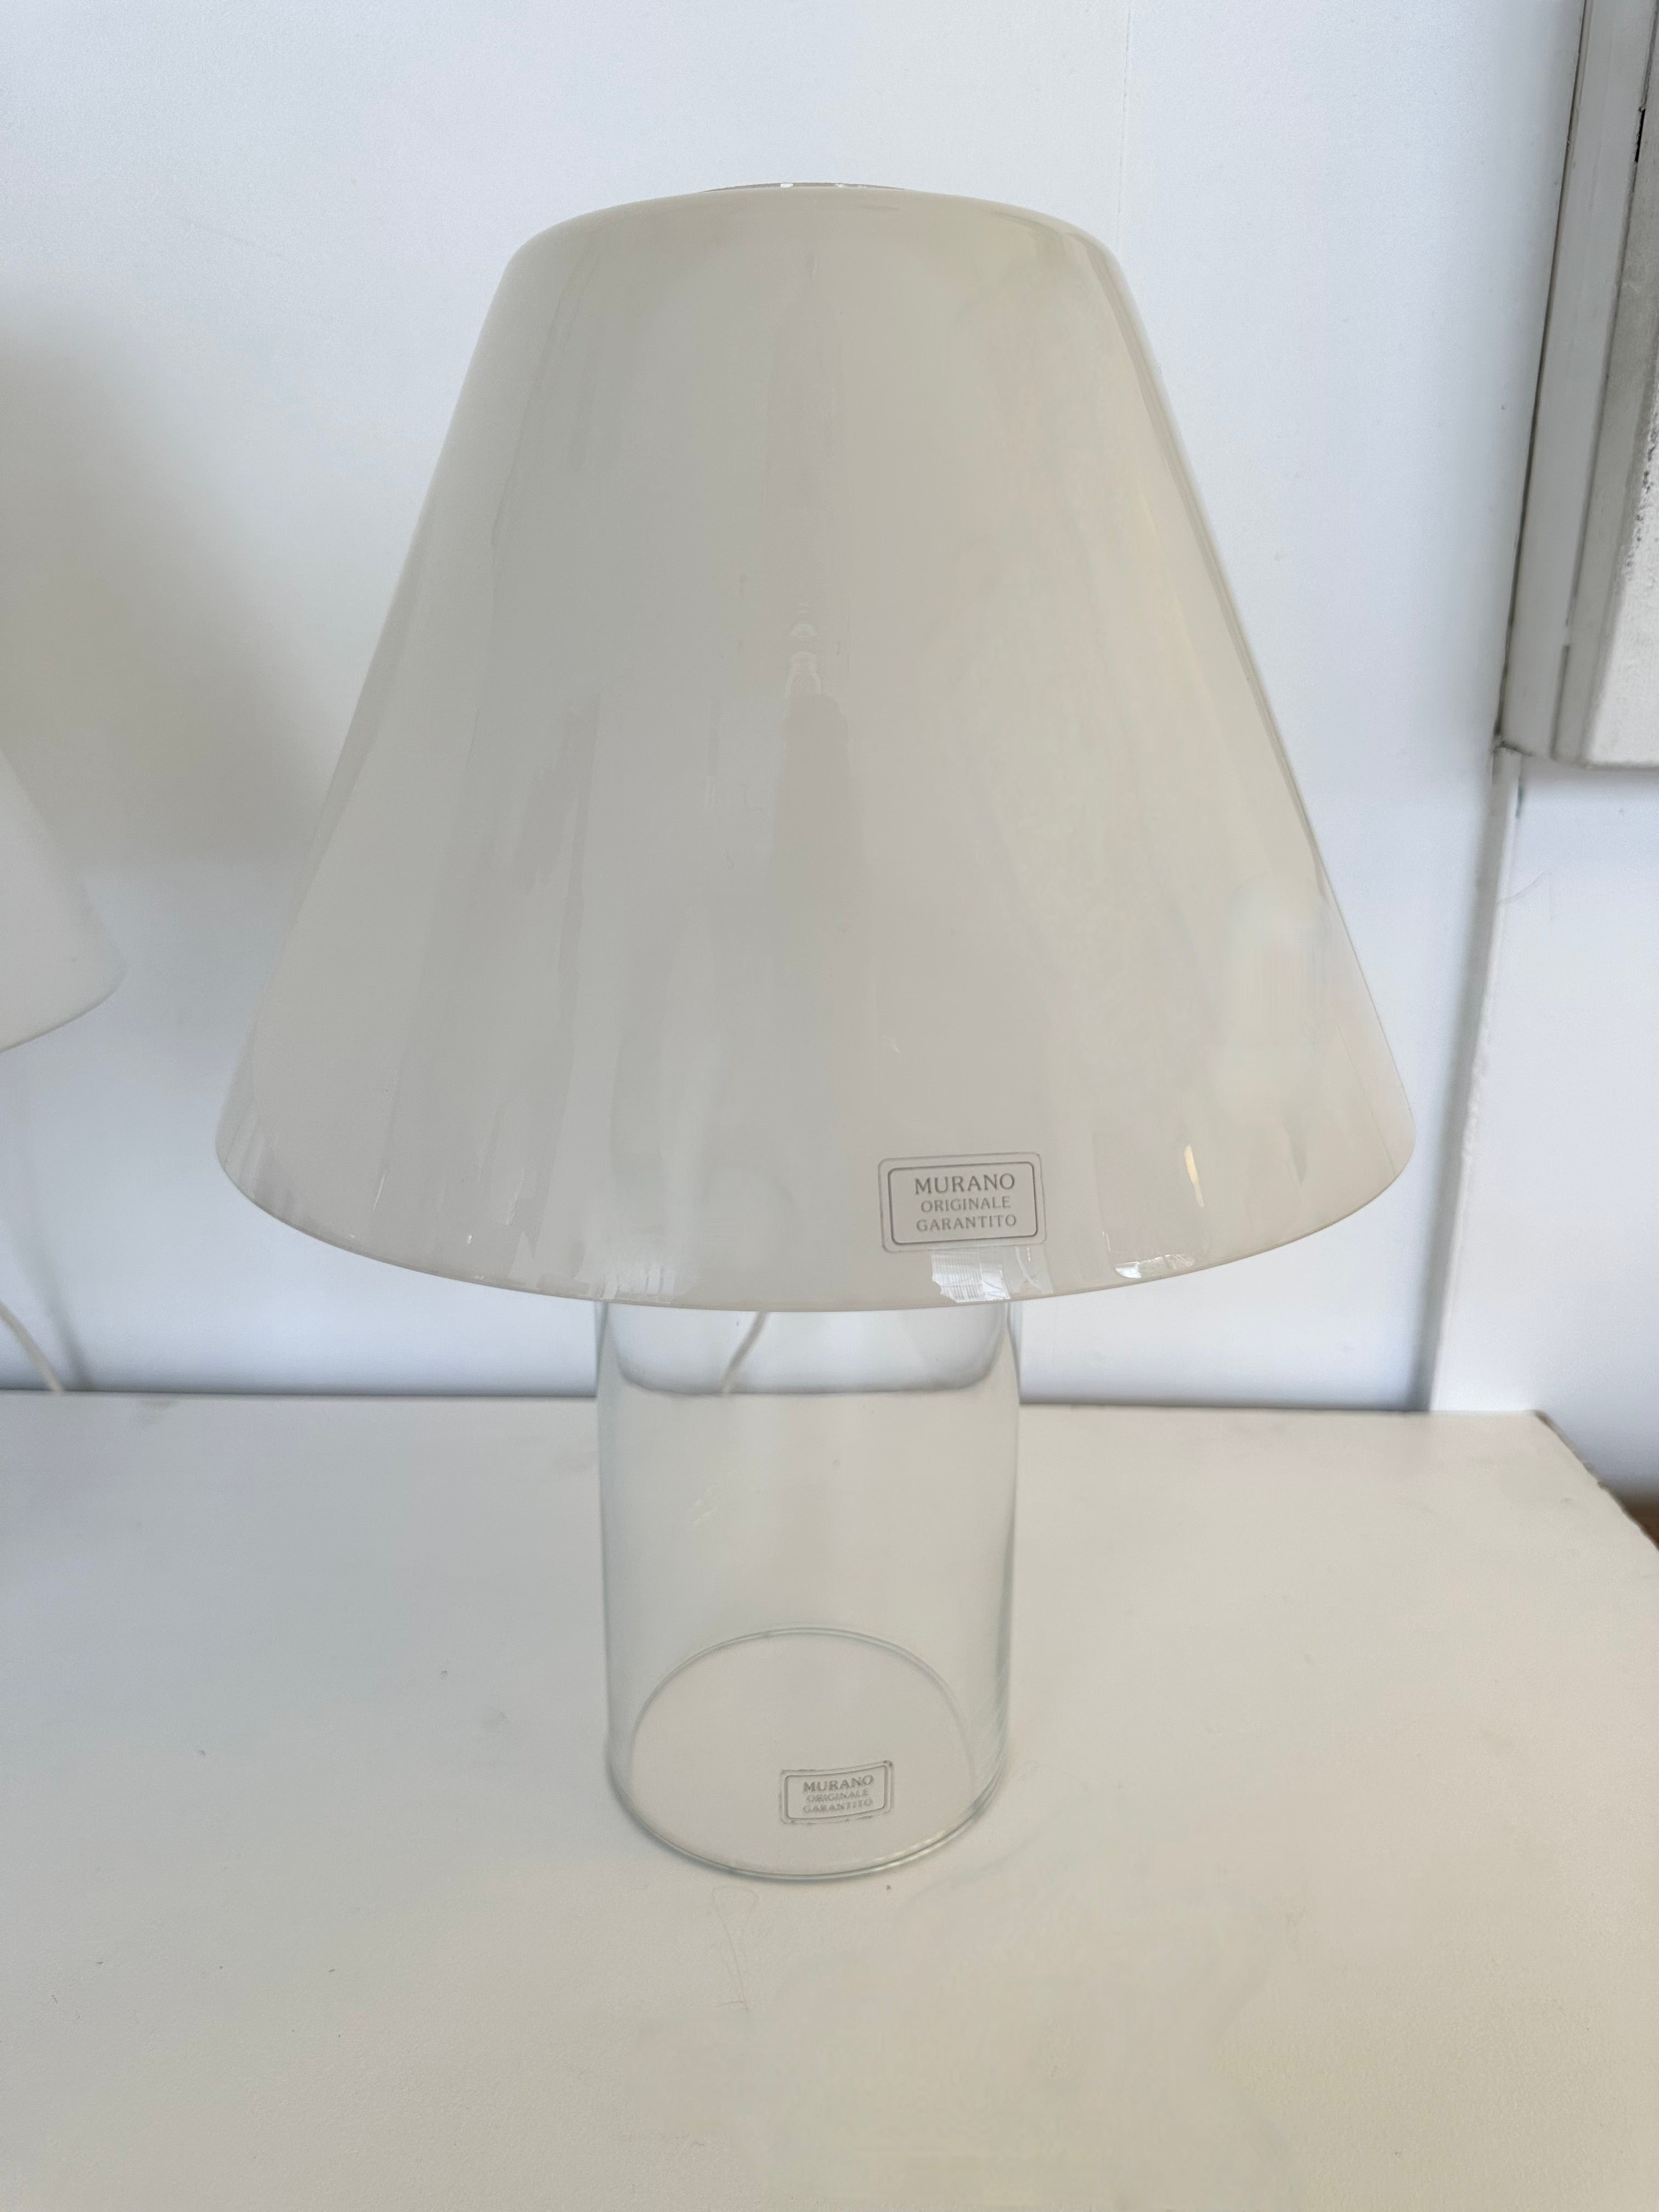 Lampe de table ou de chevet Mid-Century Modern en verre de Murano blanc et transparent, entièrement en verre, abat-jour en verre par la manufacture de design italienne Murano Due. Étiquette d'origine Garantie du verre de Murano. Des designers